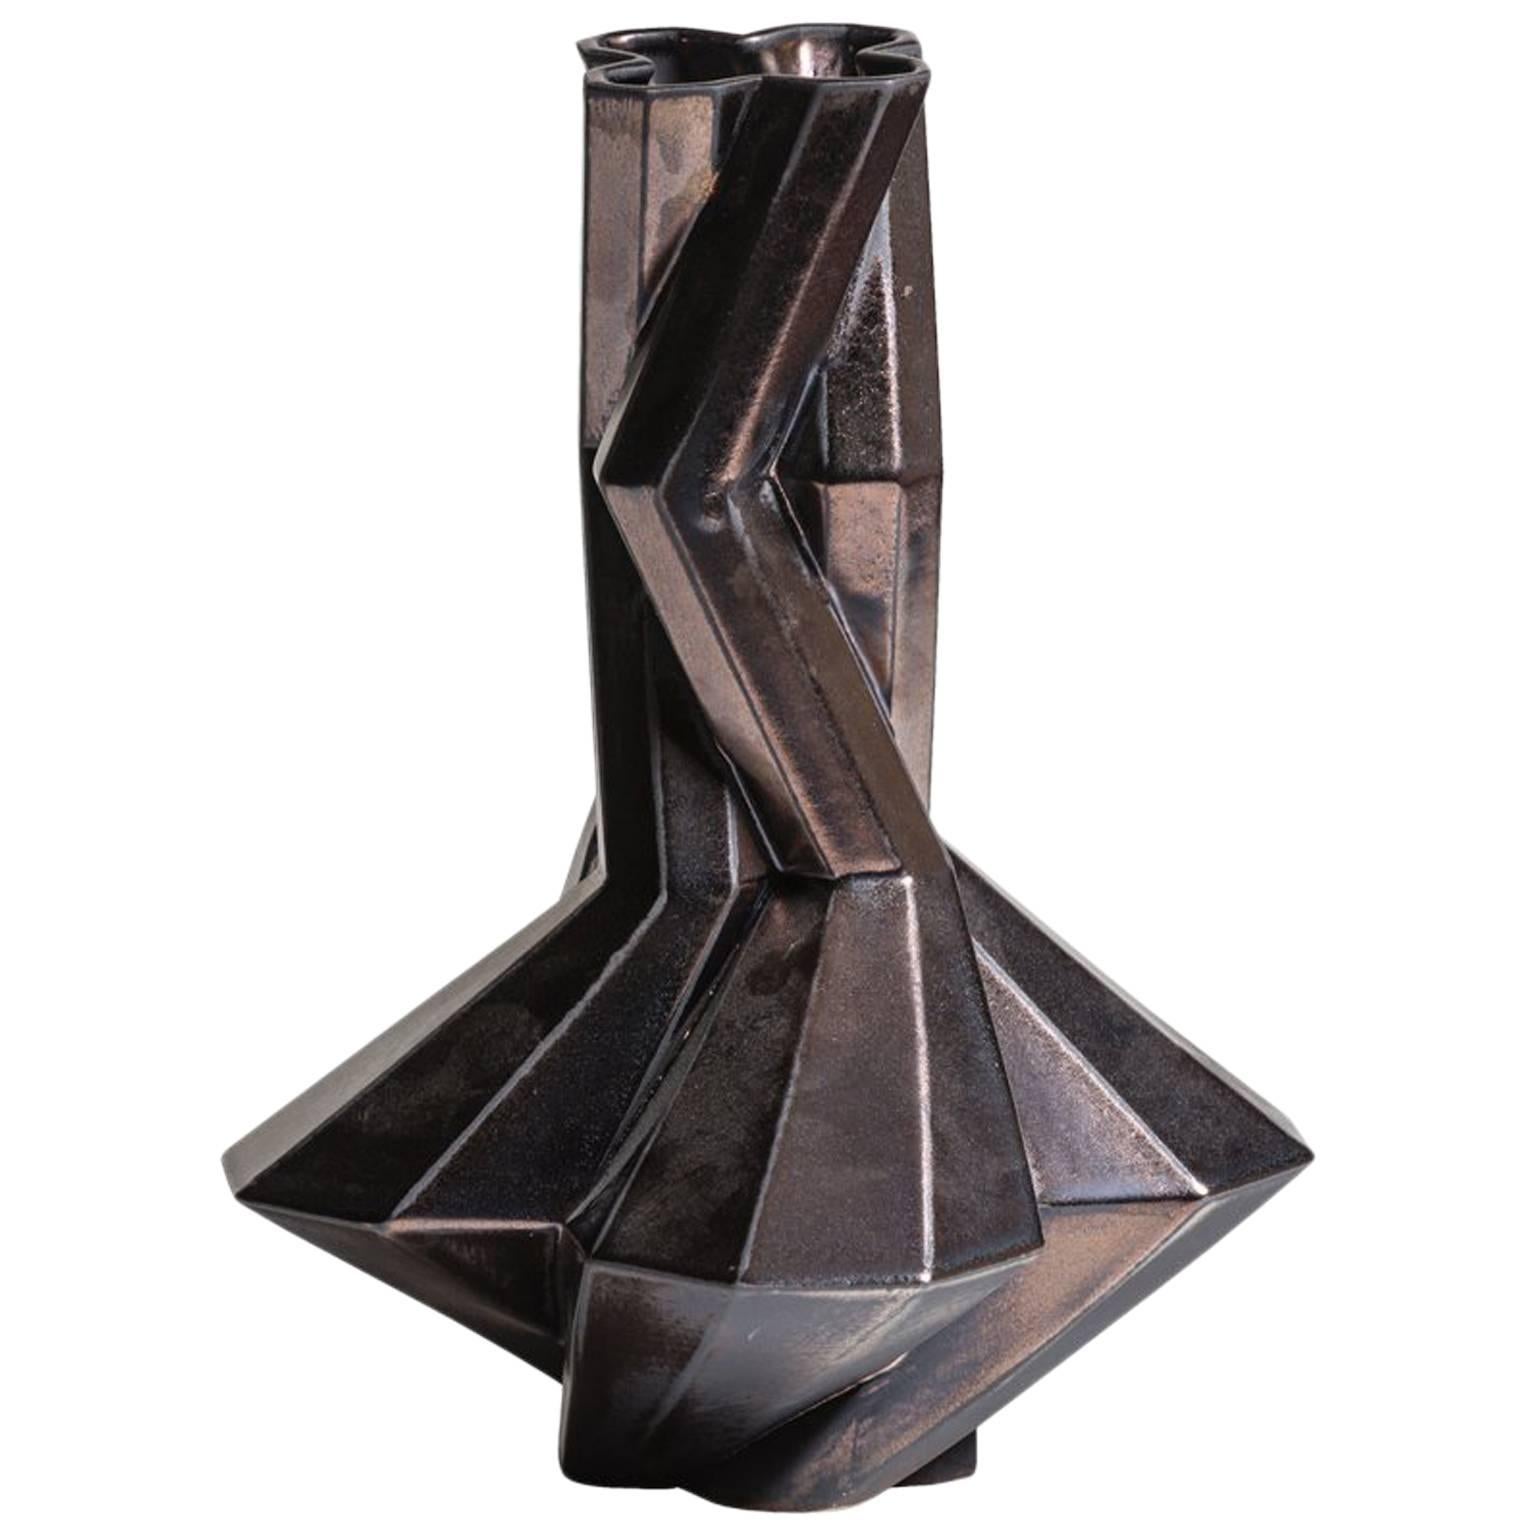 Fortress Cupola Vase in Bronze Ceramic by Lara Bohinc, In Stock